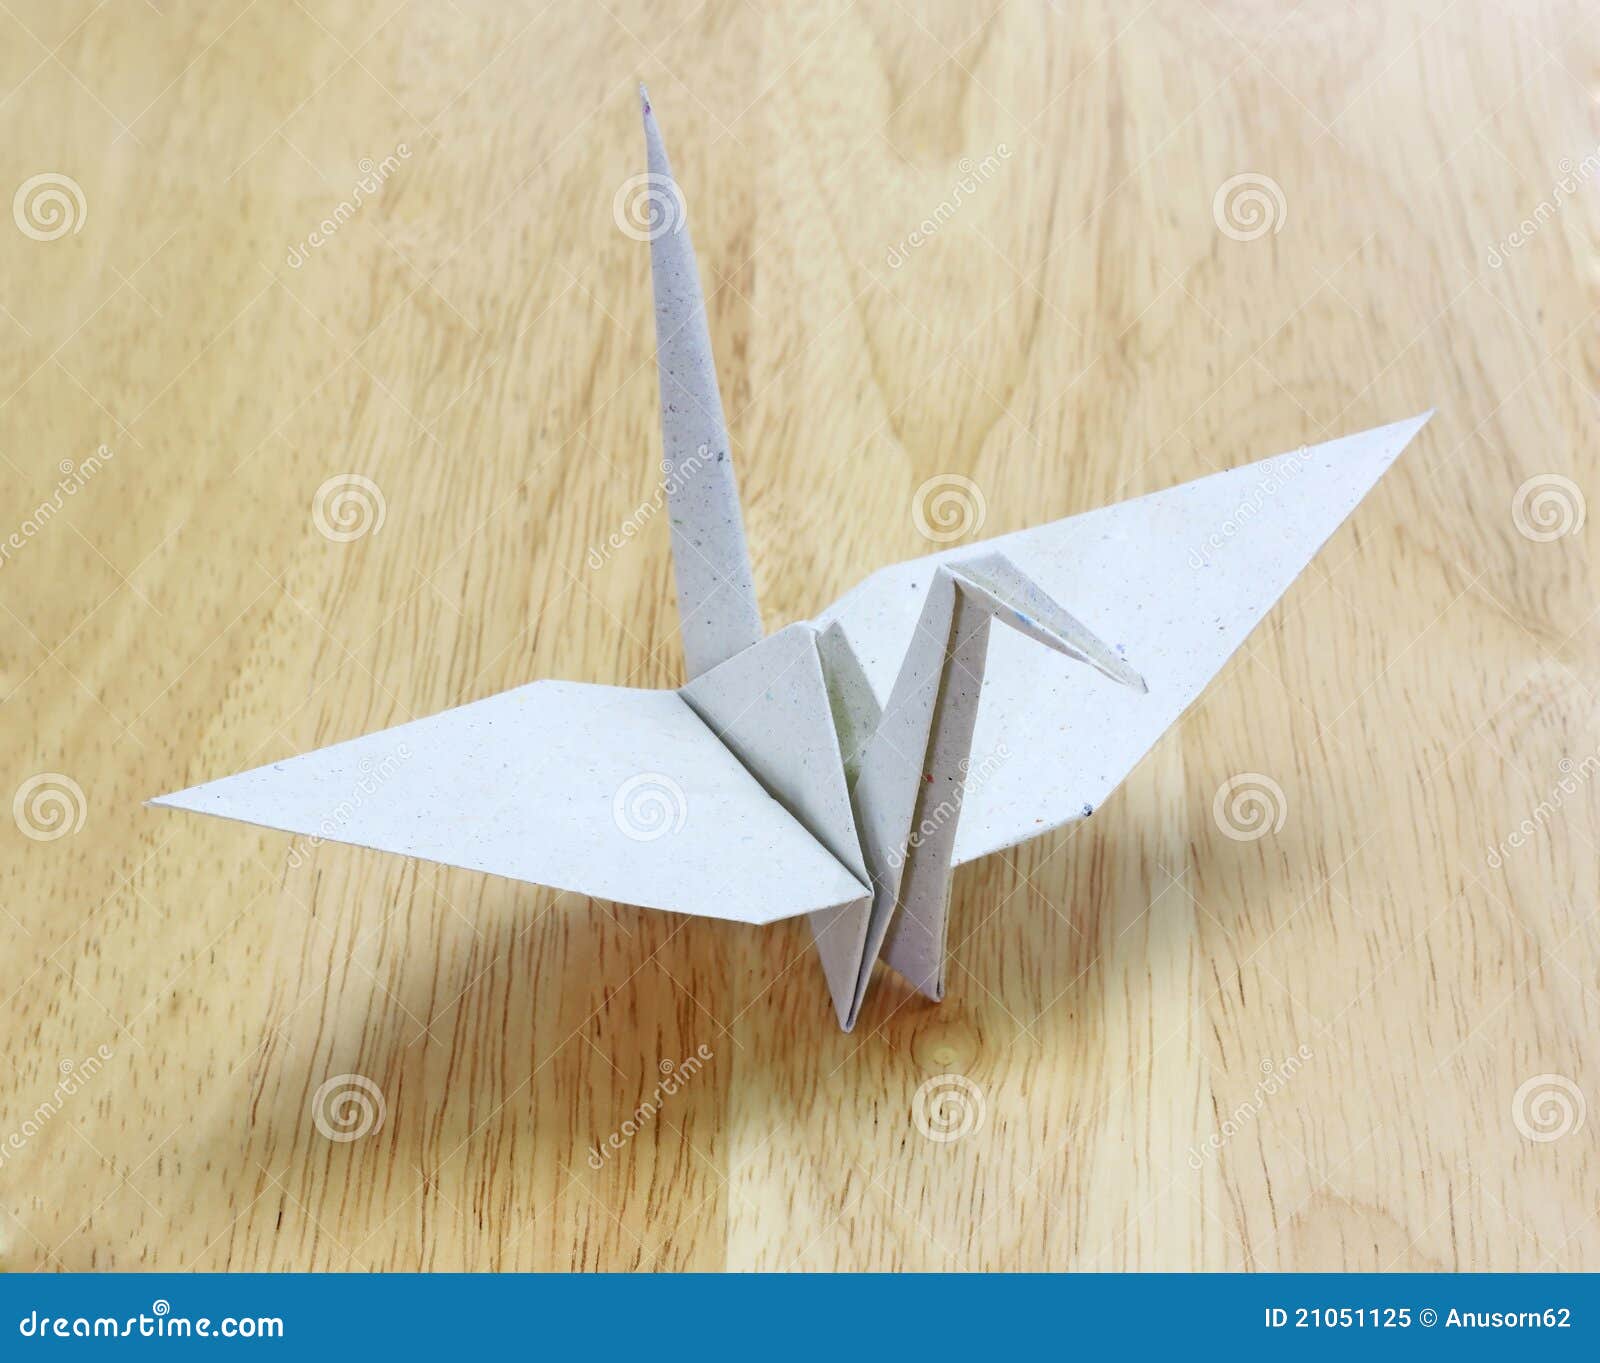 O Pássaro De Origami Feito De Recicl O Papel No Assoalho De